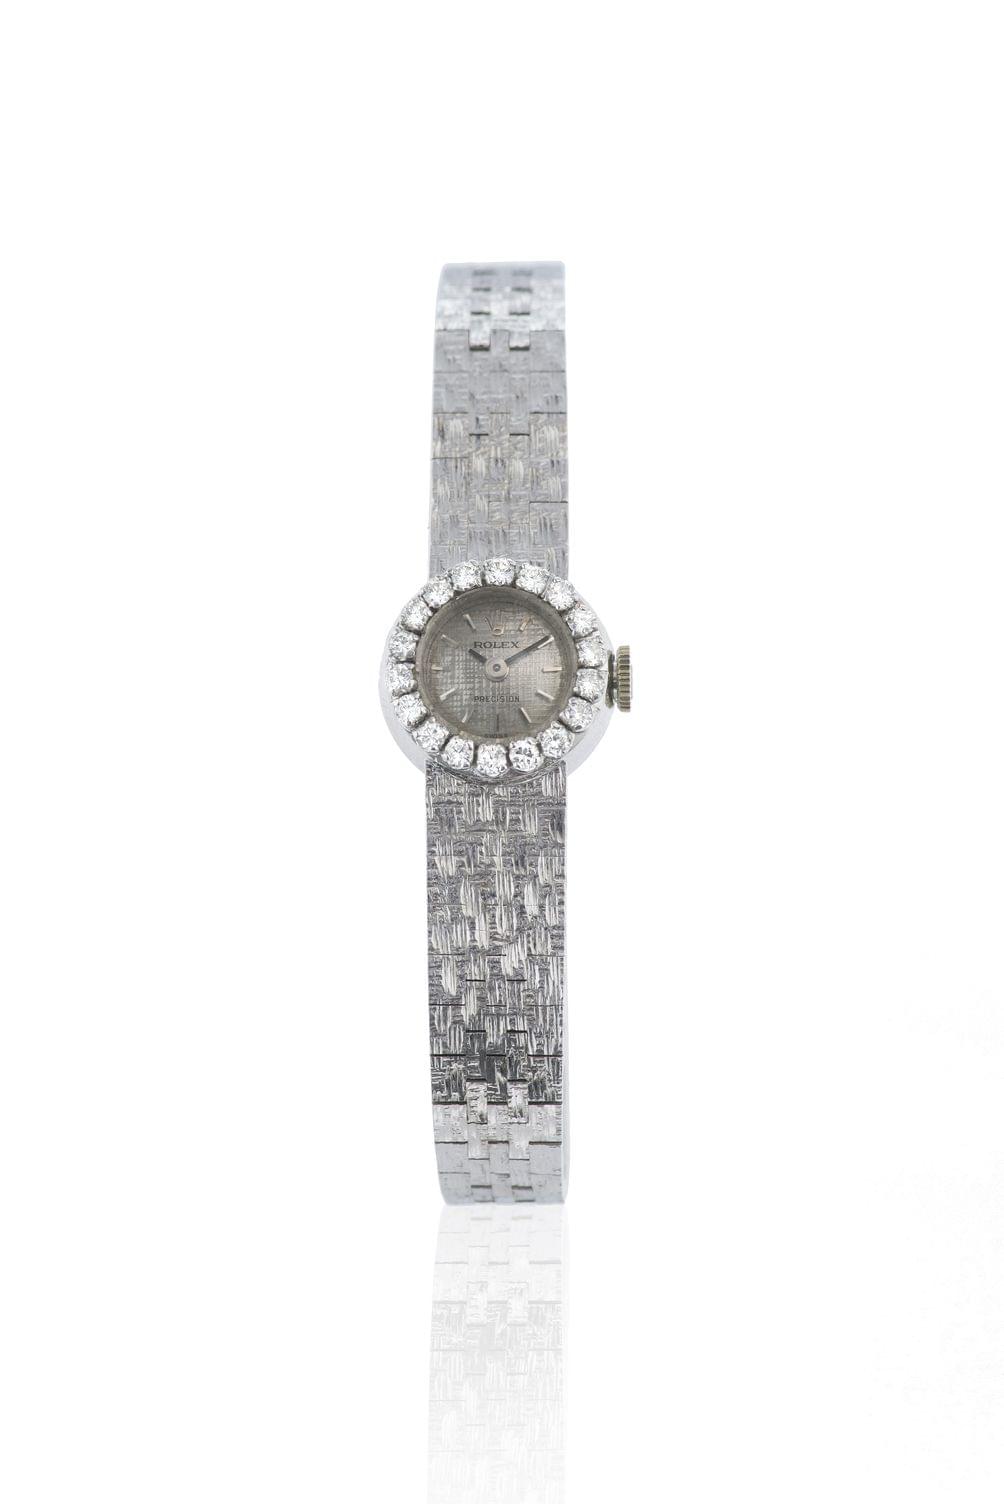 Rolex, Precision, montre-bracelet ronde mécanique sertie de diamants